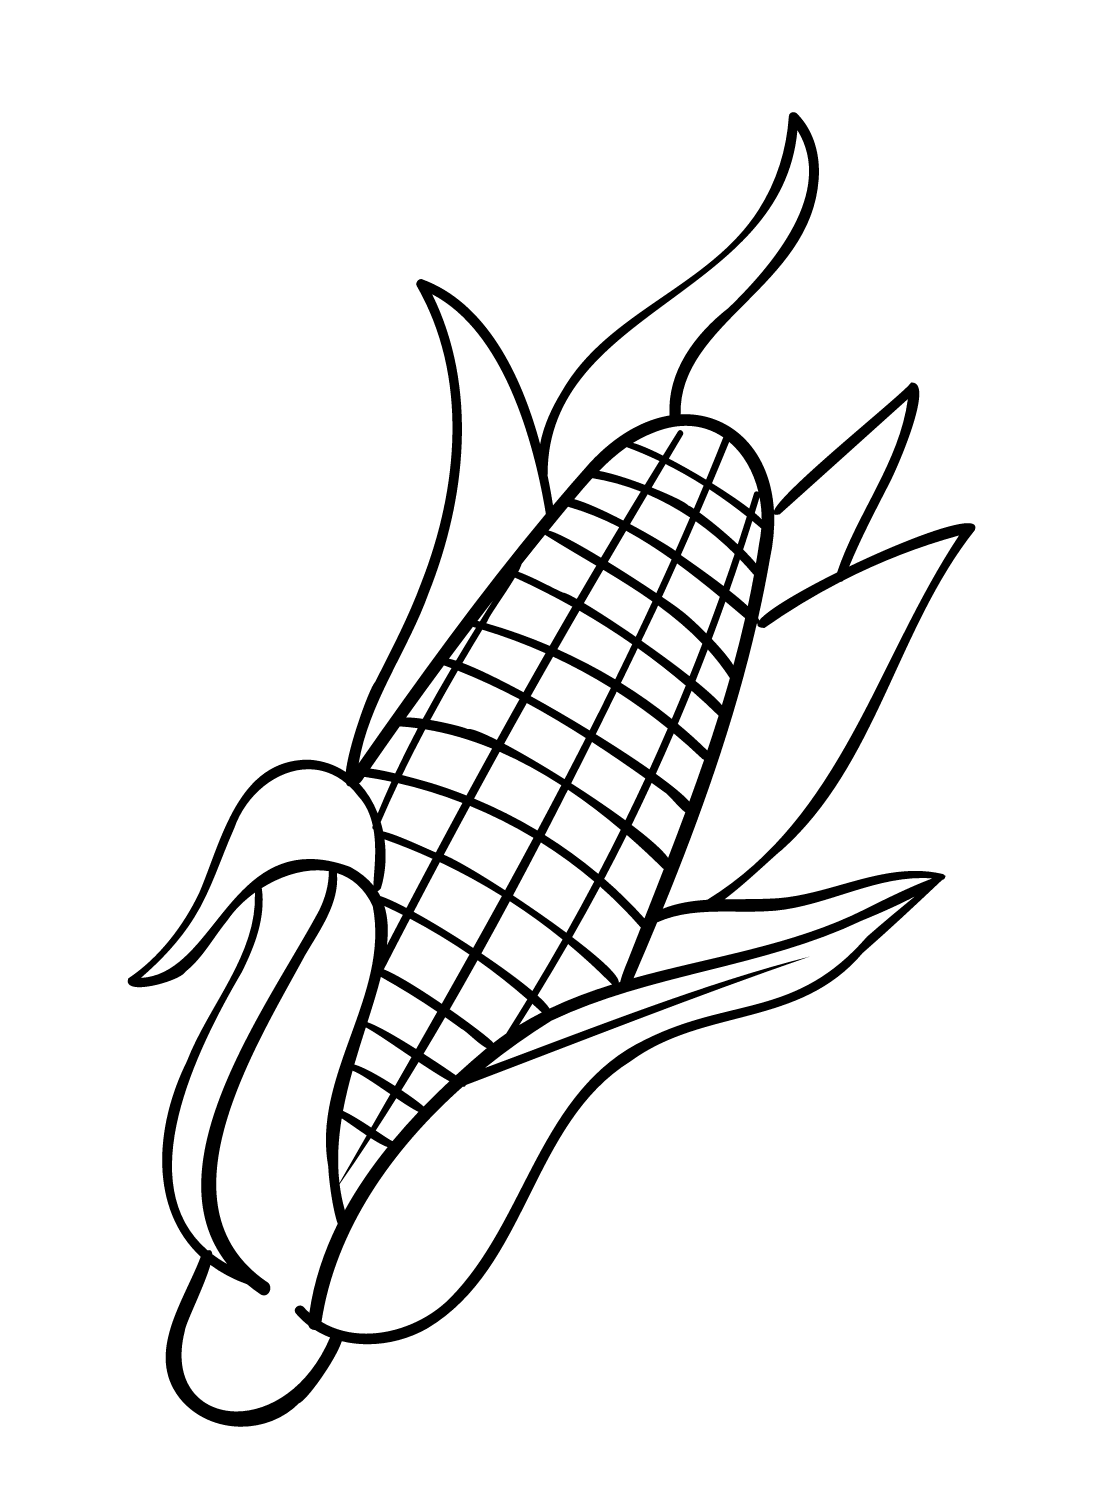 Sweet Corn from Corn